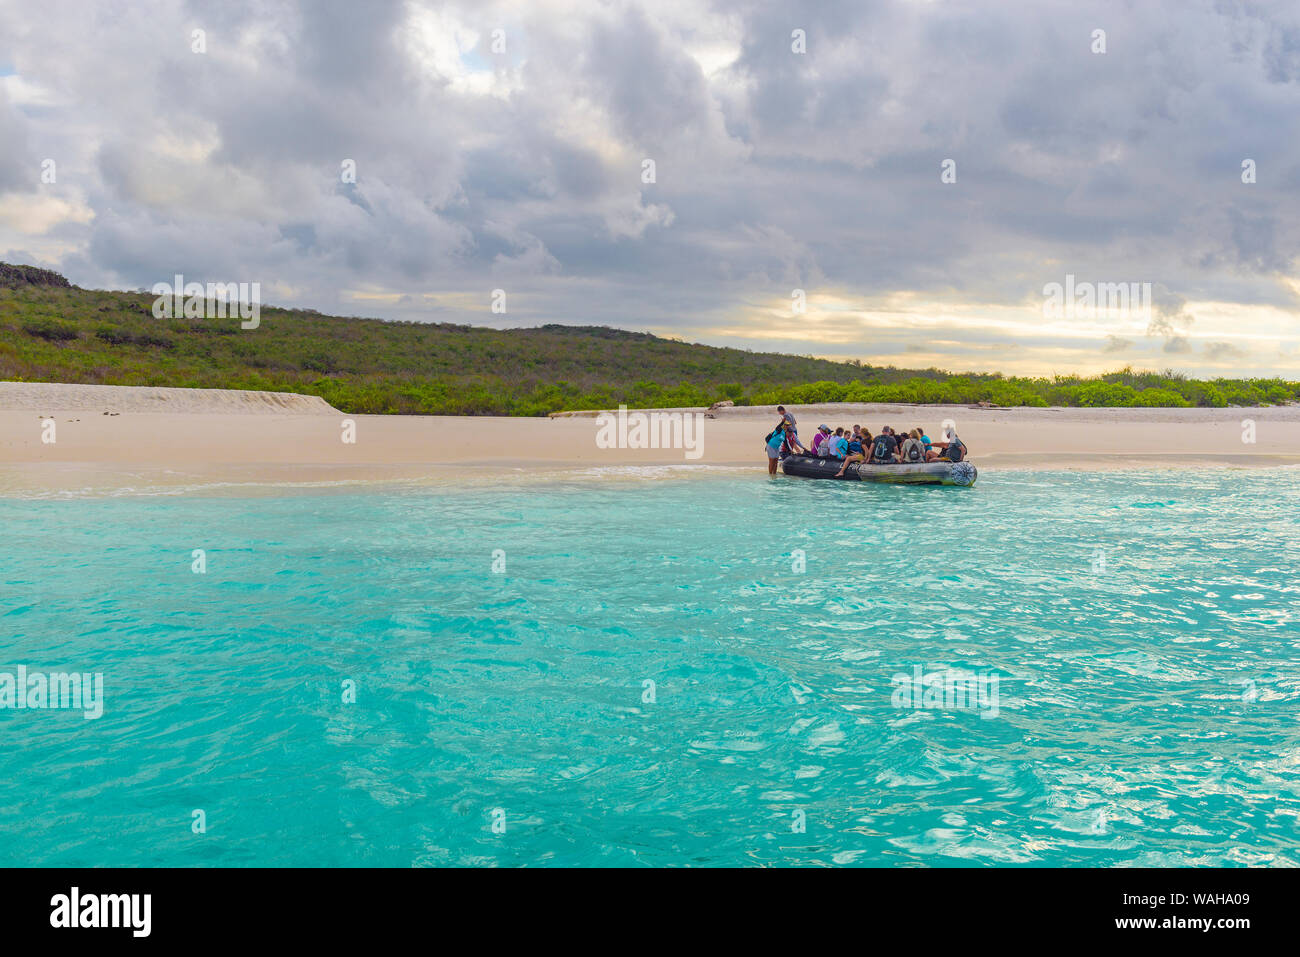 Les touristes en descendant de Zodiac un bateau d'excursion pendant un atterrissage humide sur la plage de Bahia Gardner, Gardner Bay, Espanola Island, îles Galapagos, en Équateur. Banque D'Images